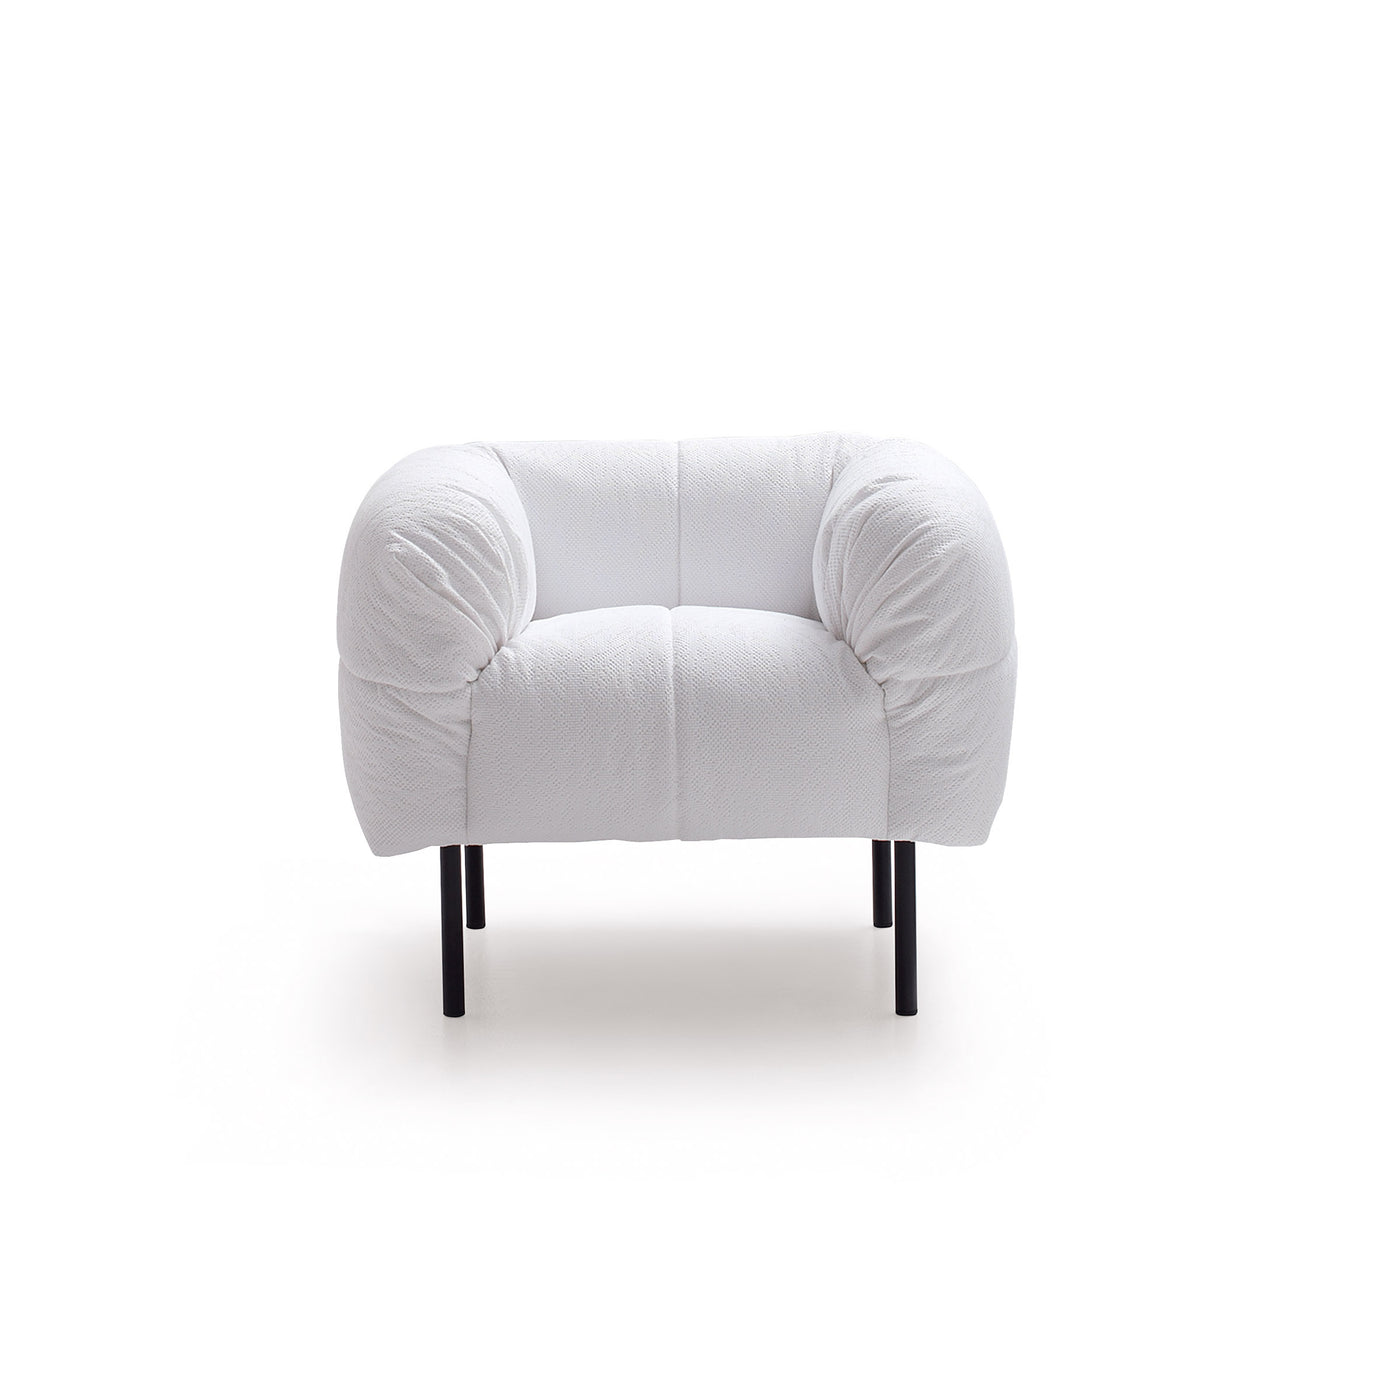 Fabric Armchair PECORELLE by Cini Boeri for Arflex 01